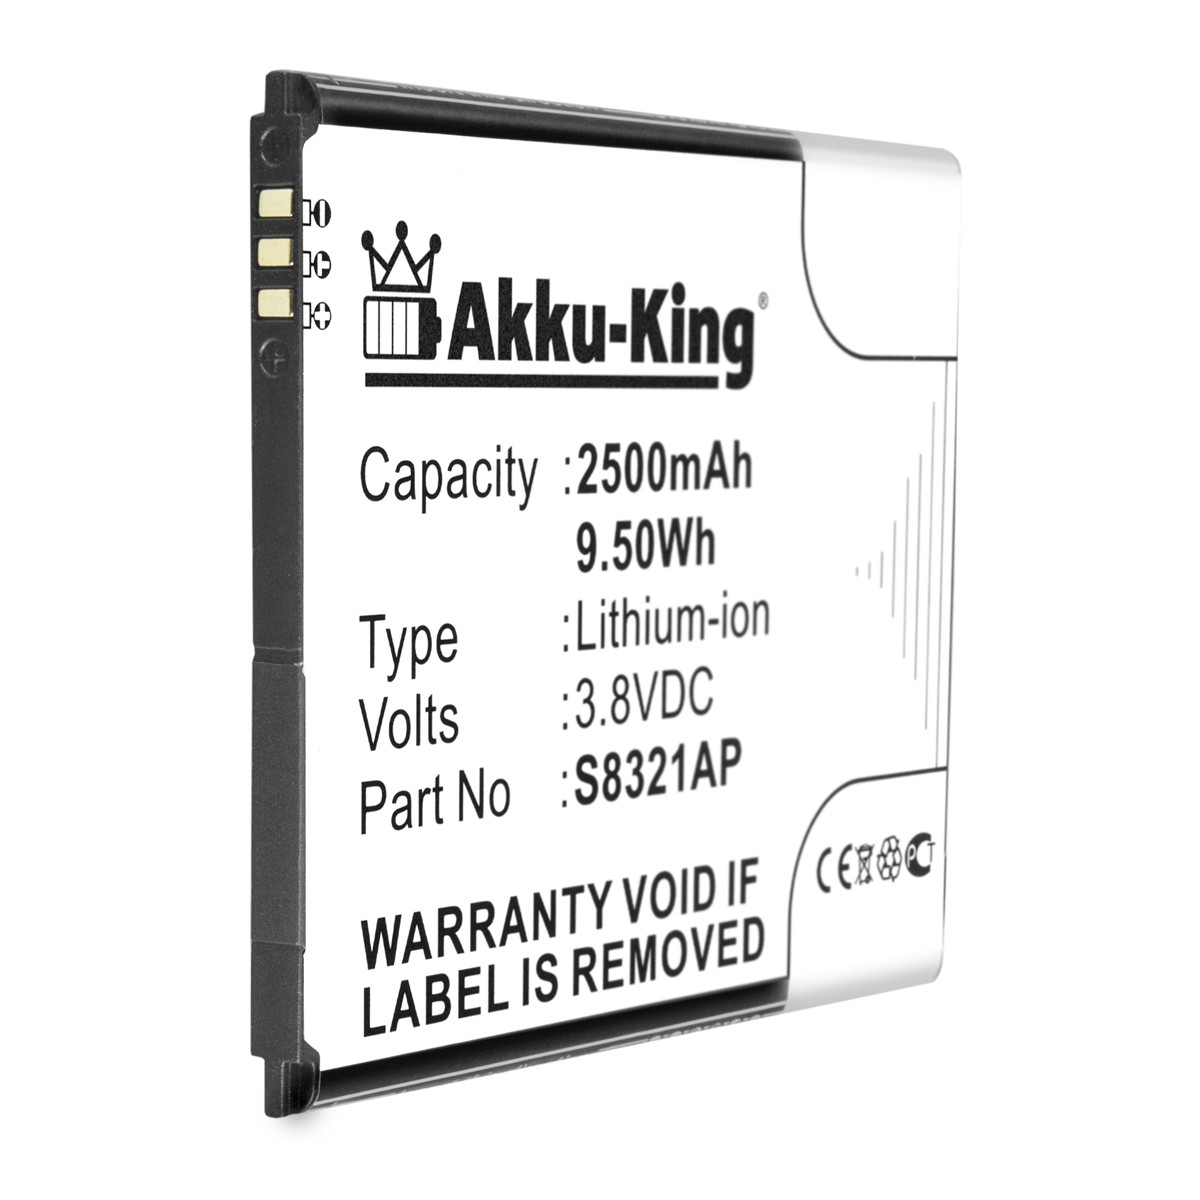 AKKU-KING Akku kompatibel mit Wiko 2500mAh 3.8 Volt, Handy-Akku, S8321AP Li-Ion